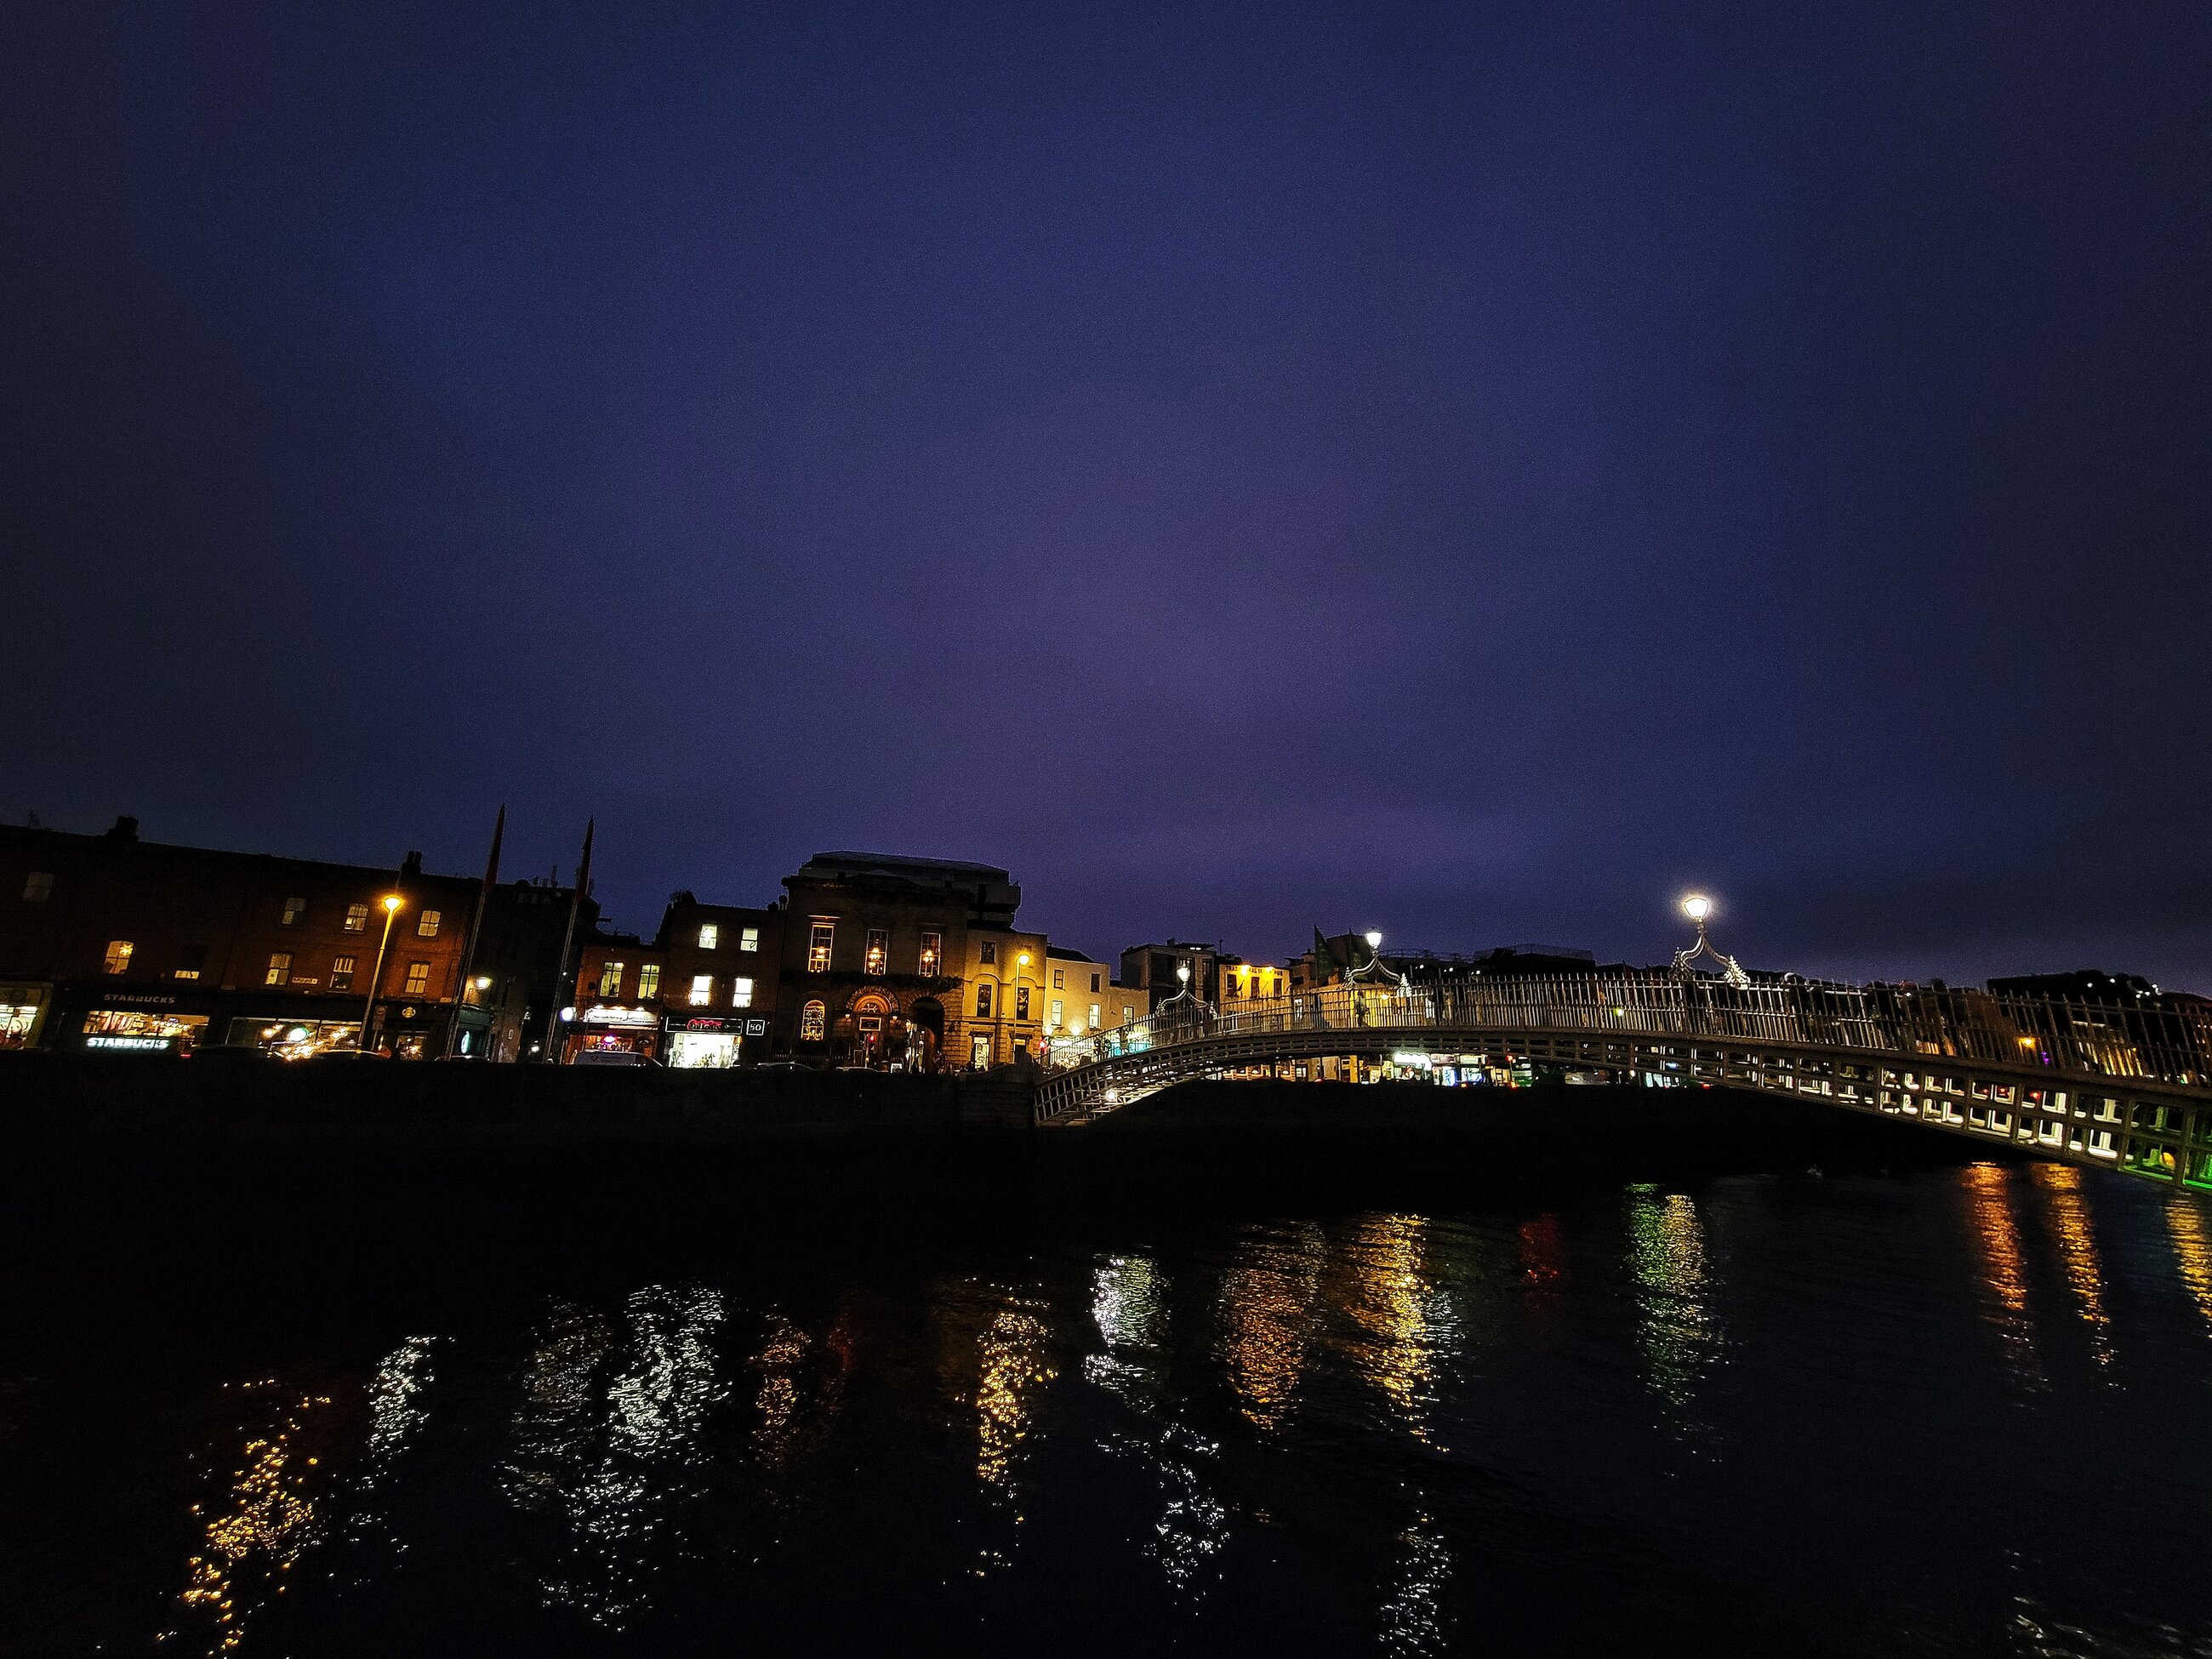 Ha'penny Bridge at night